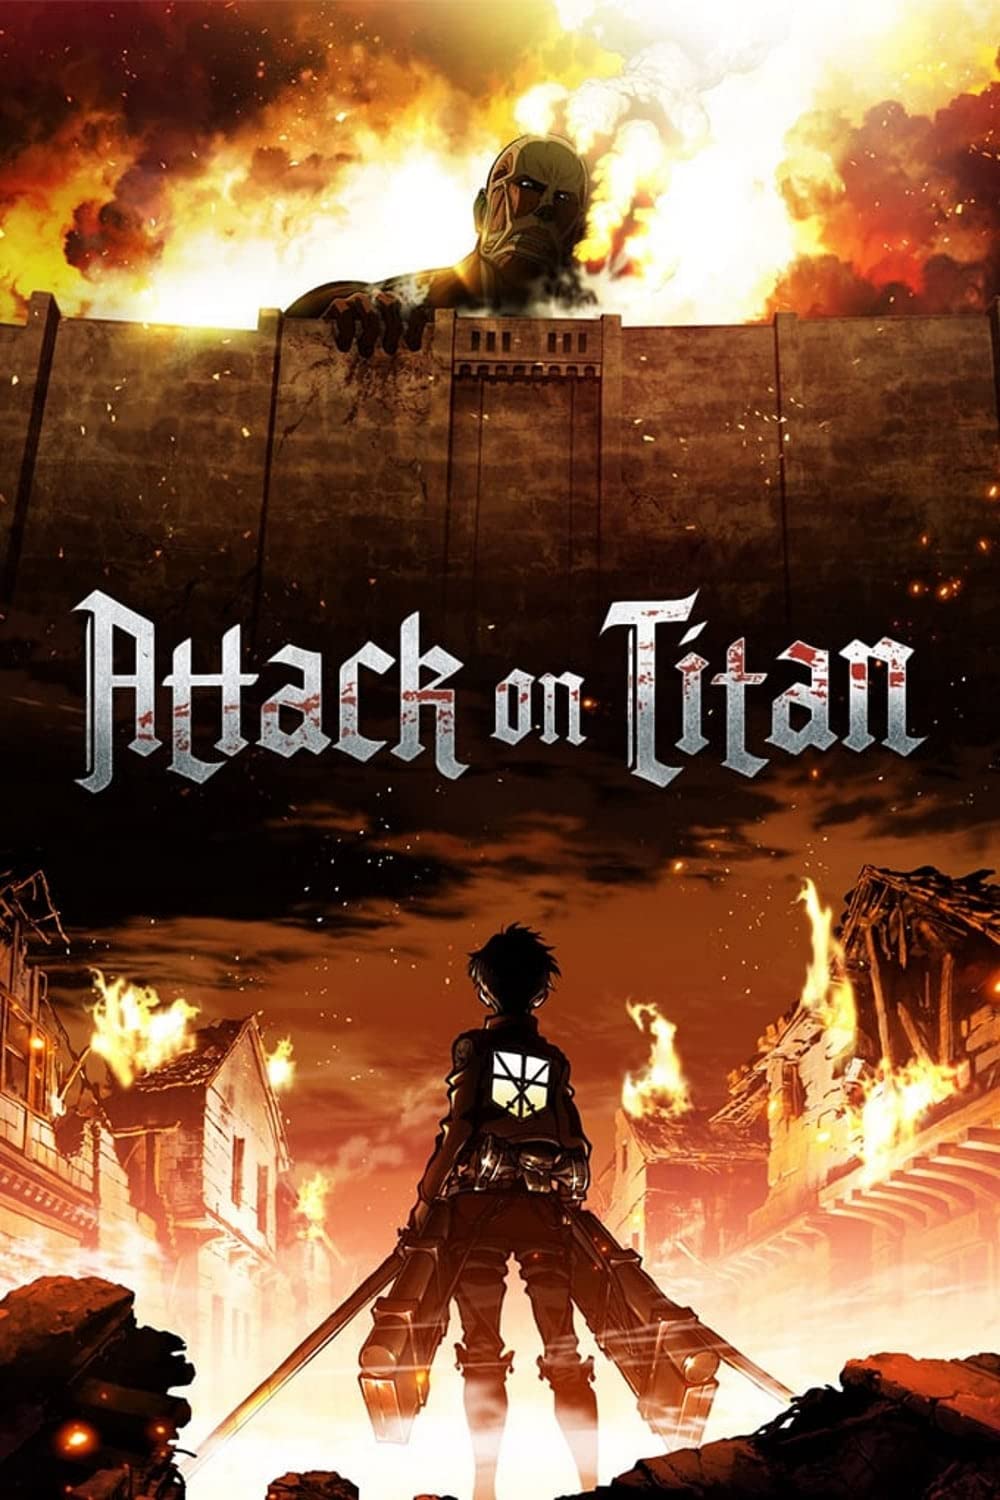 Filmbeschreibung zu Attack on Titan